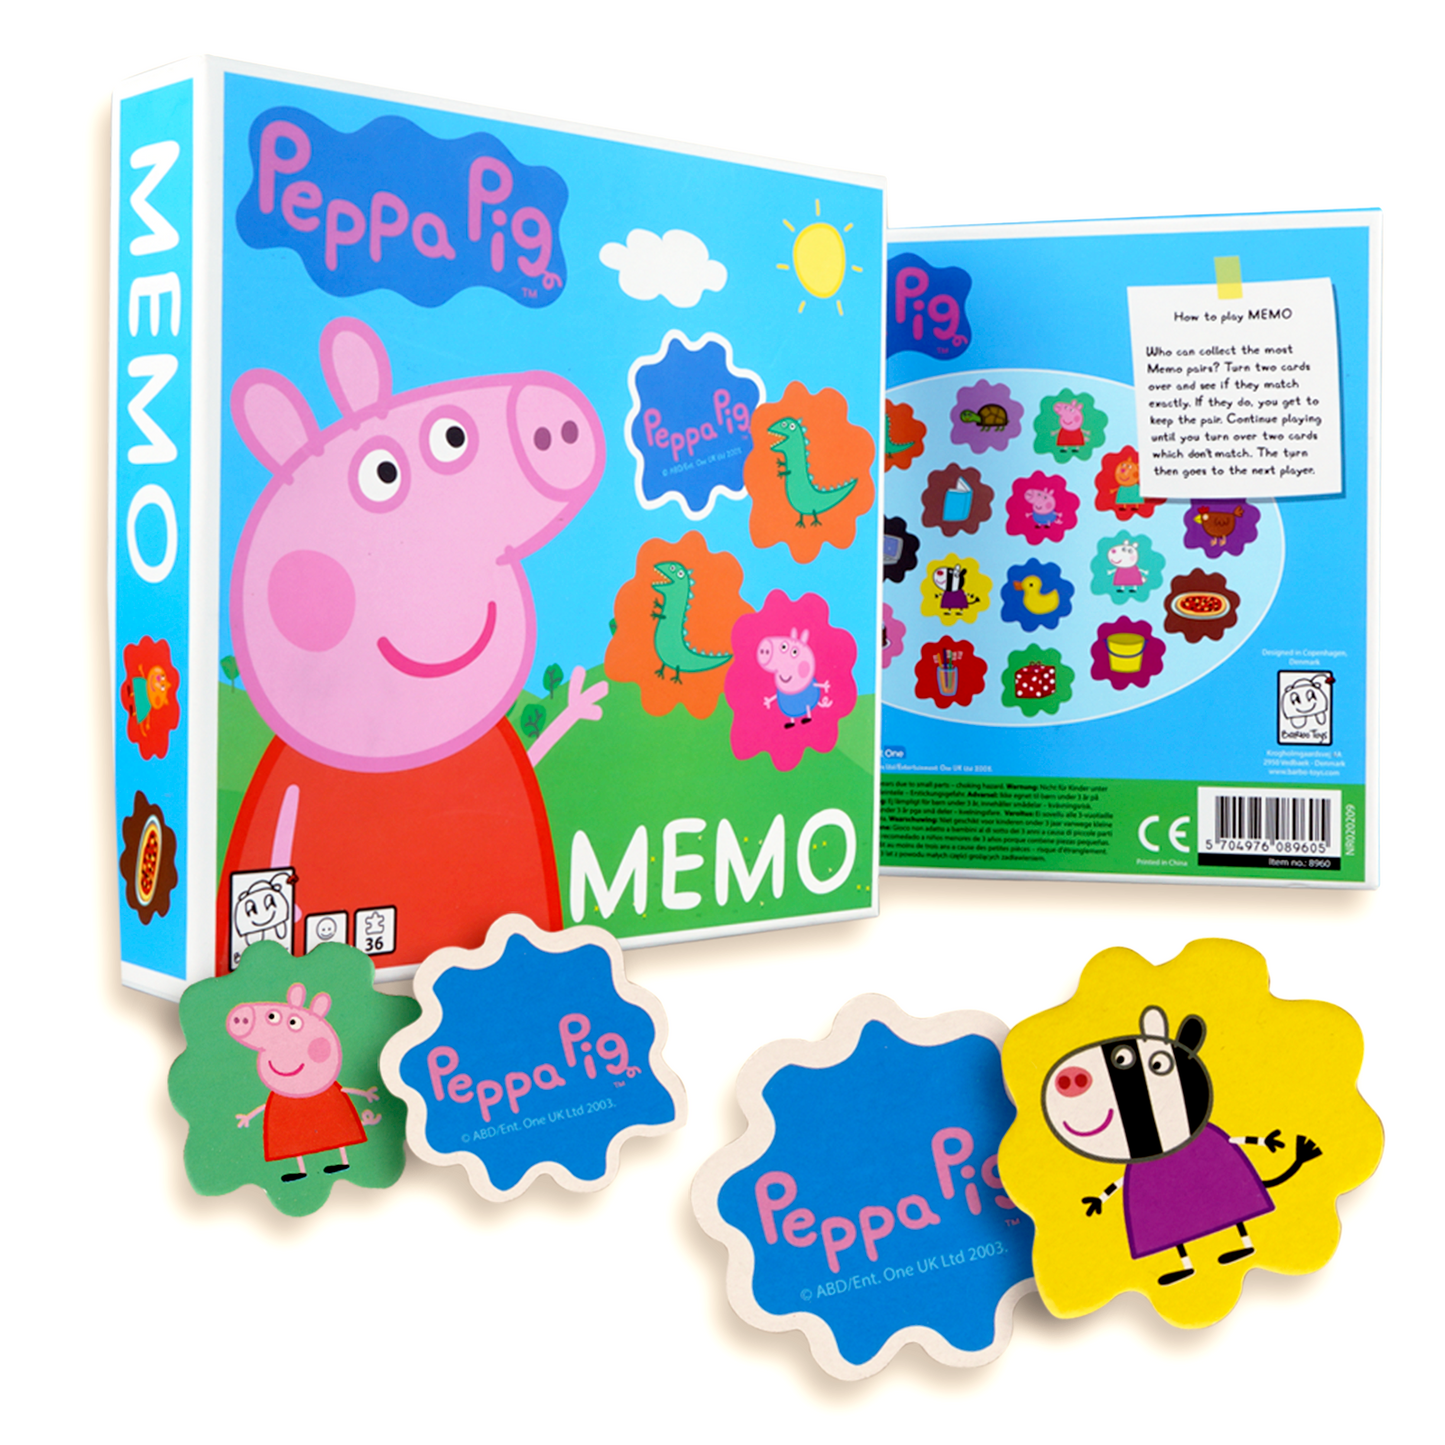 peppa pig memo game box